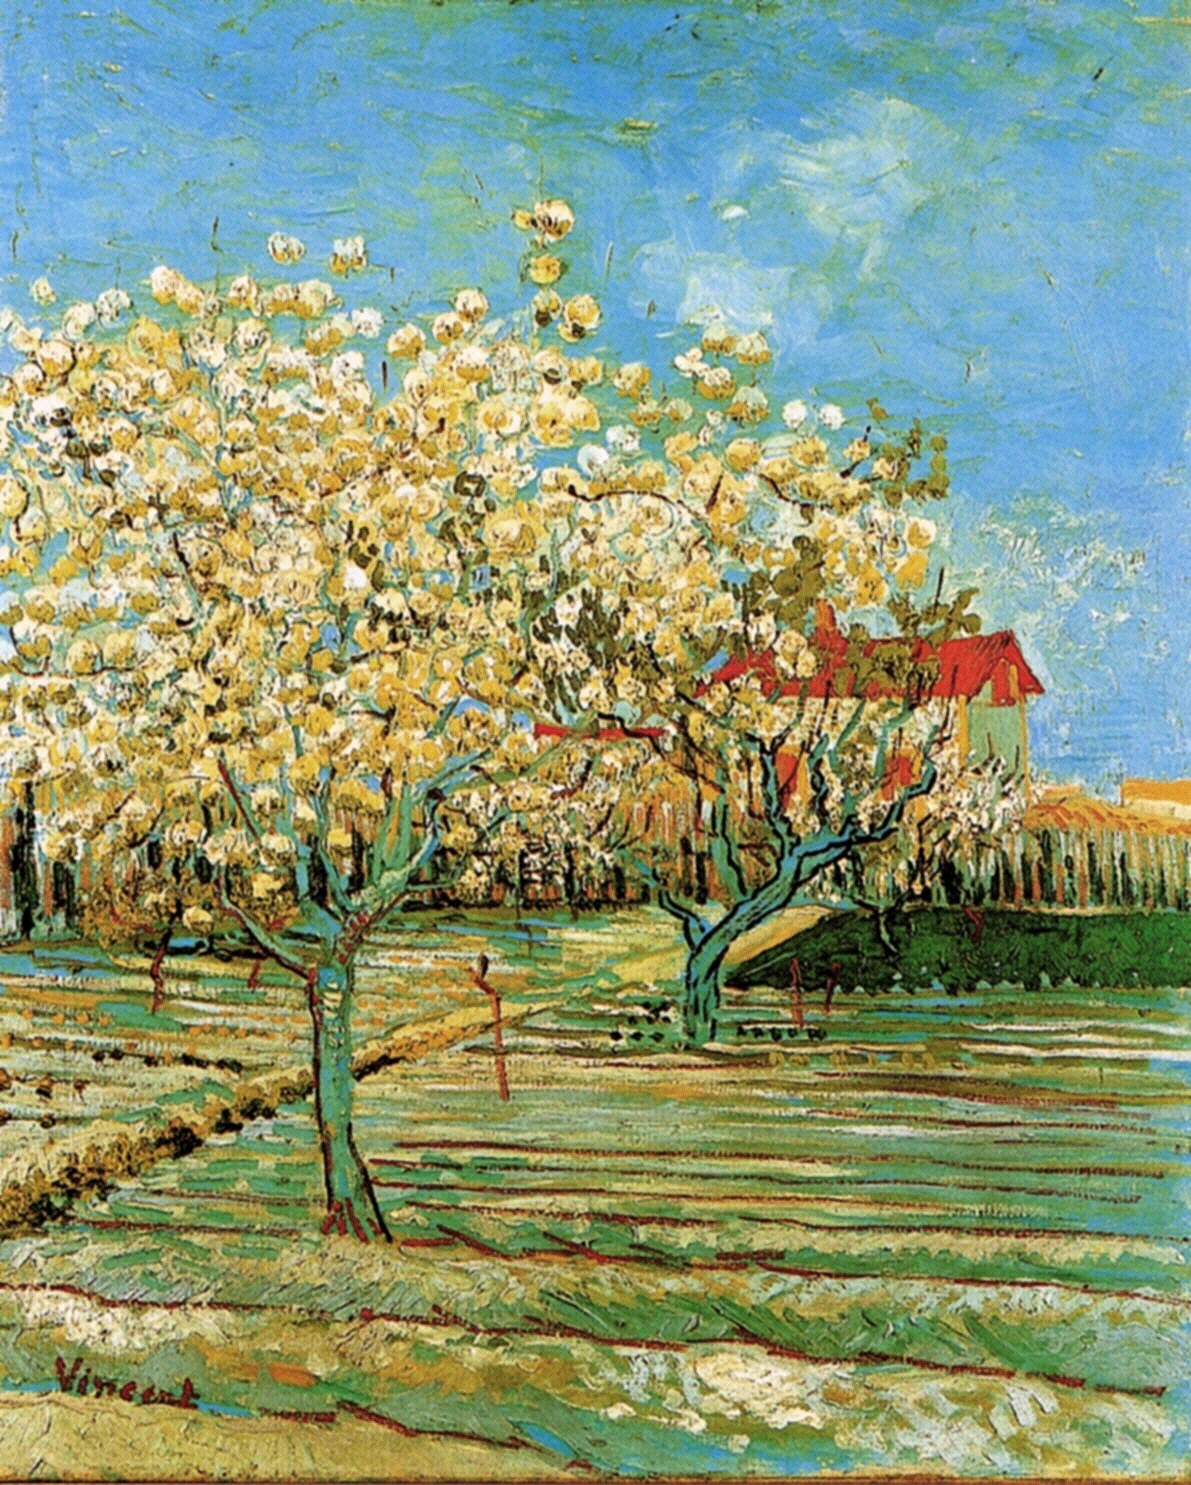 Винсент Ван Гог. "Фруктовый сад в цвету". 1888. Частная коллекция.